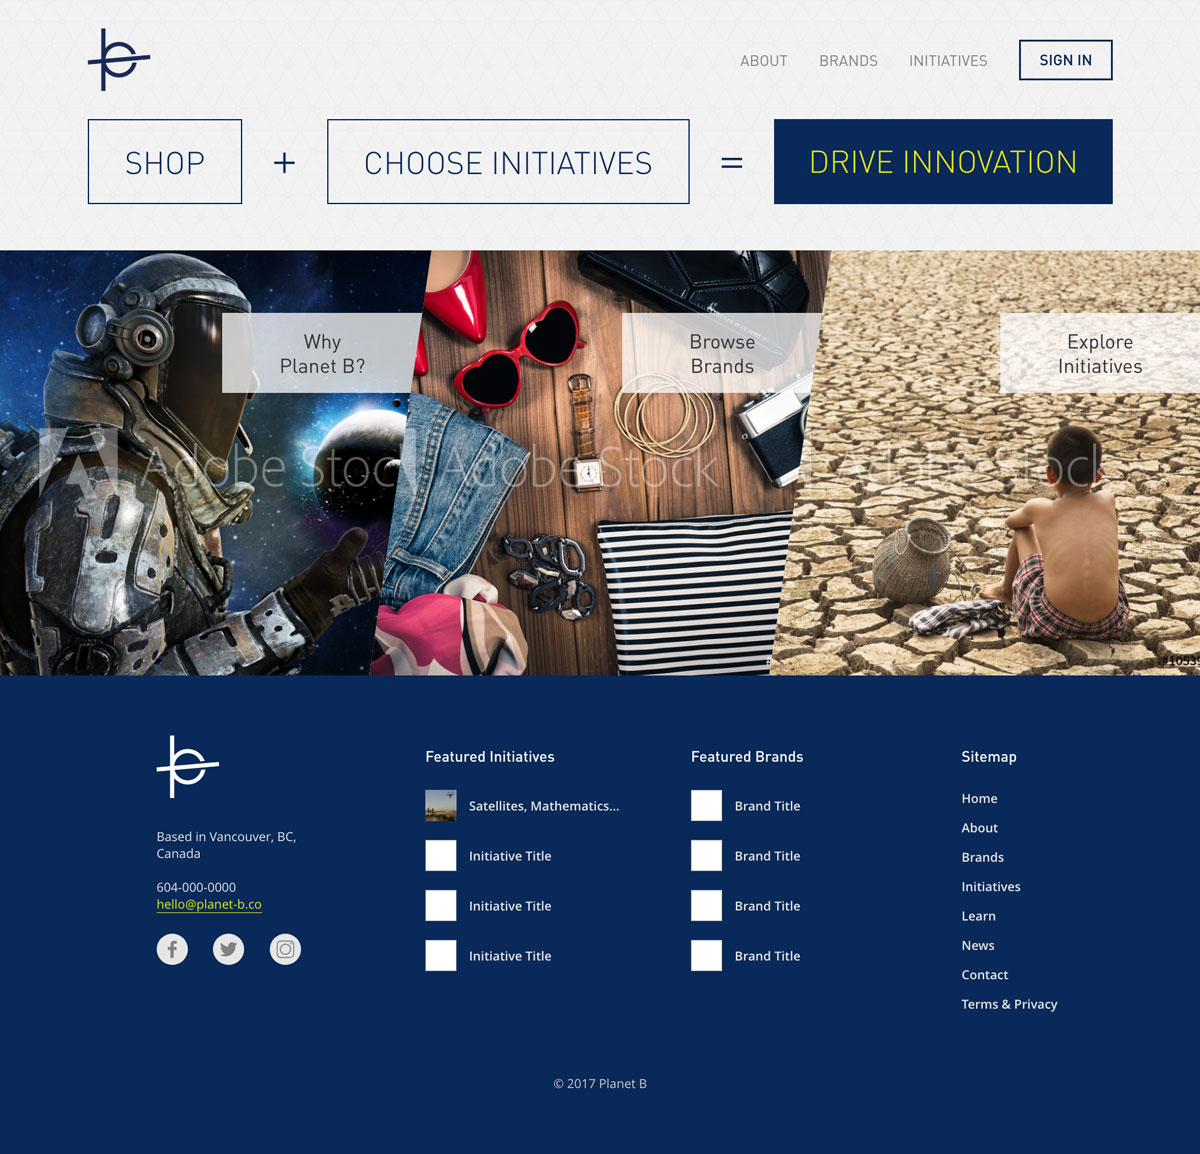 Planet B Website Design Mockup - Home Page